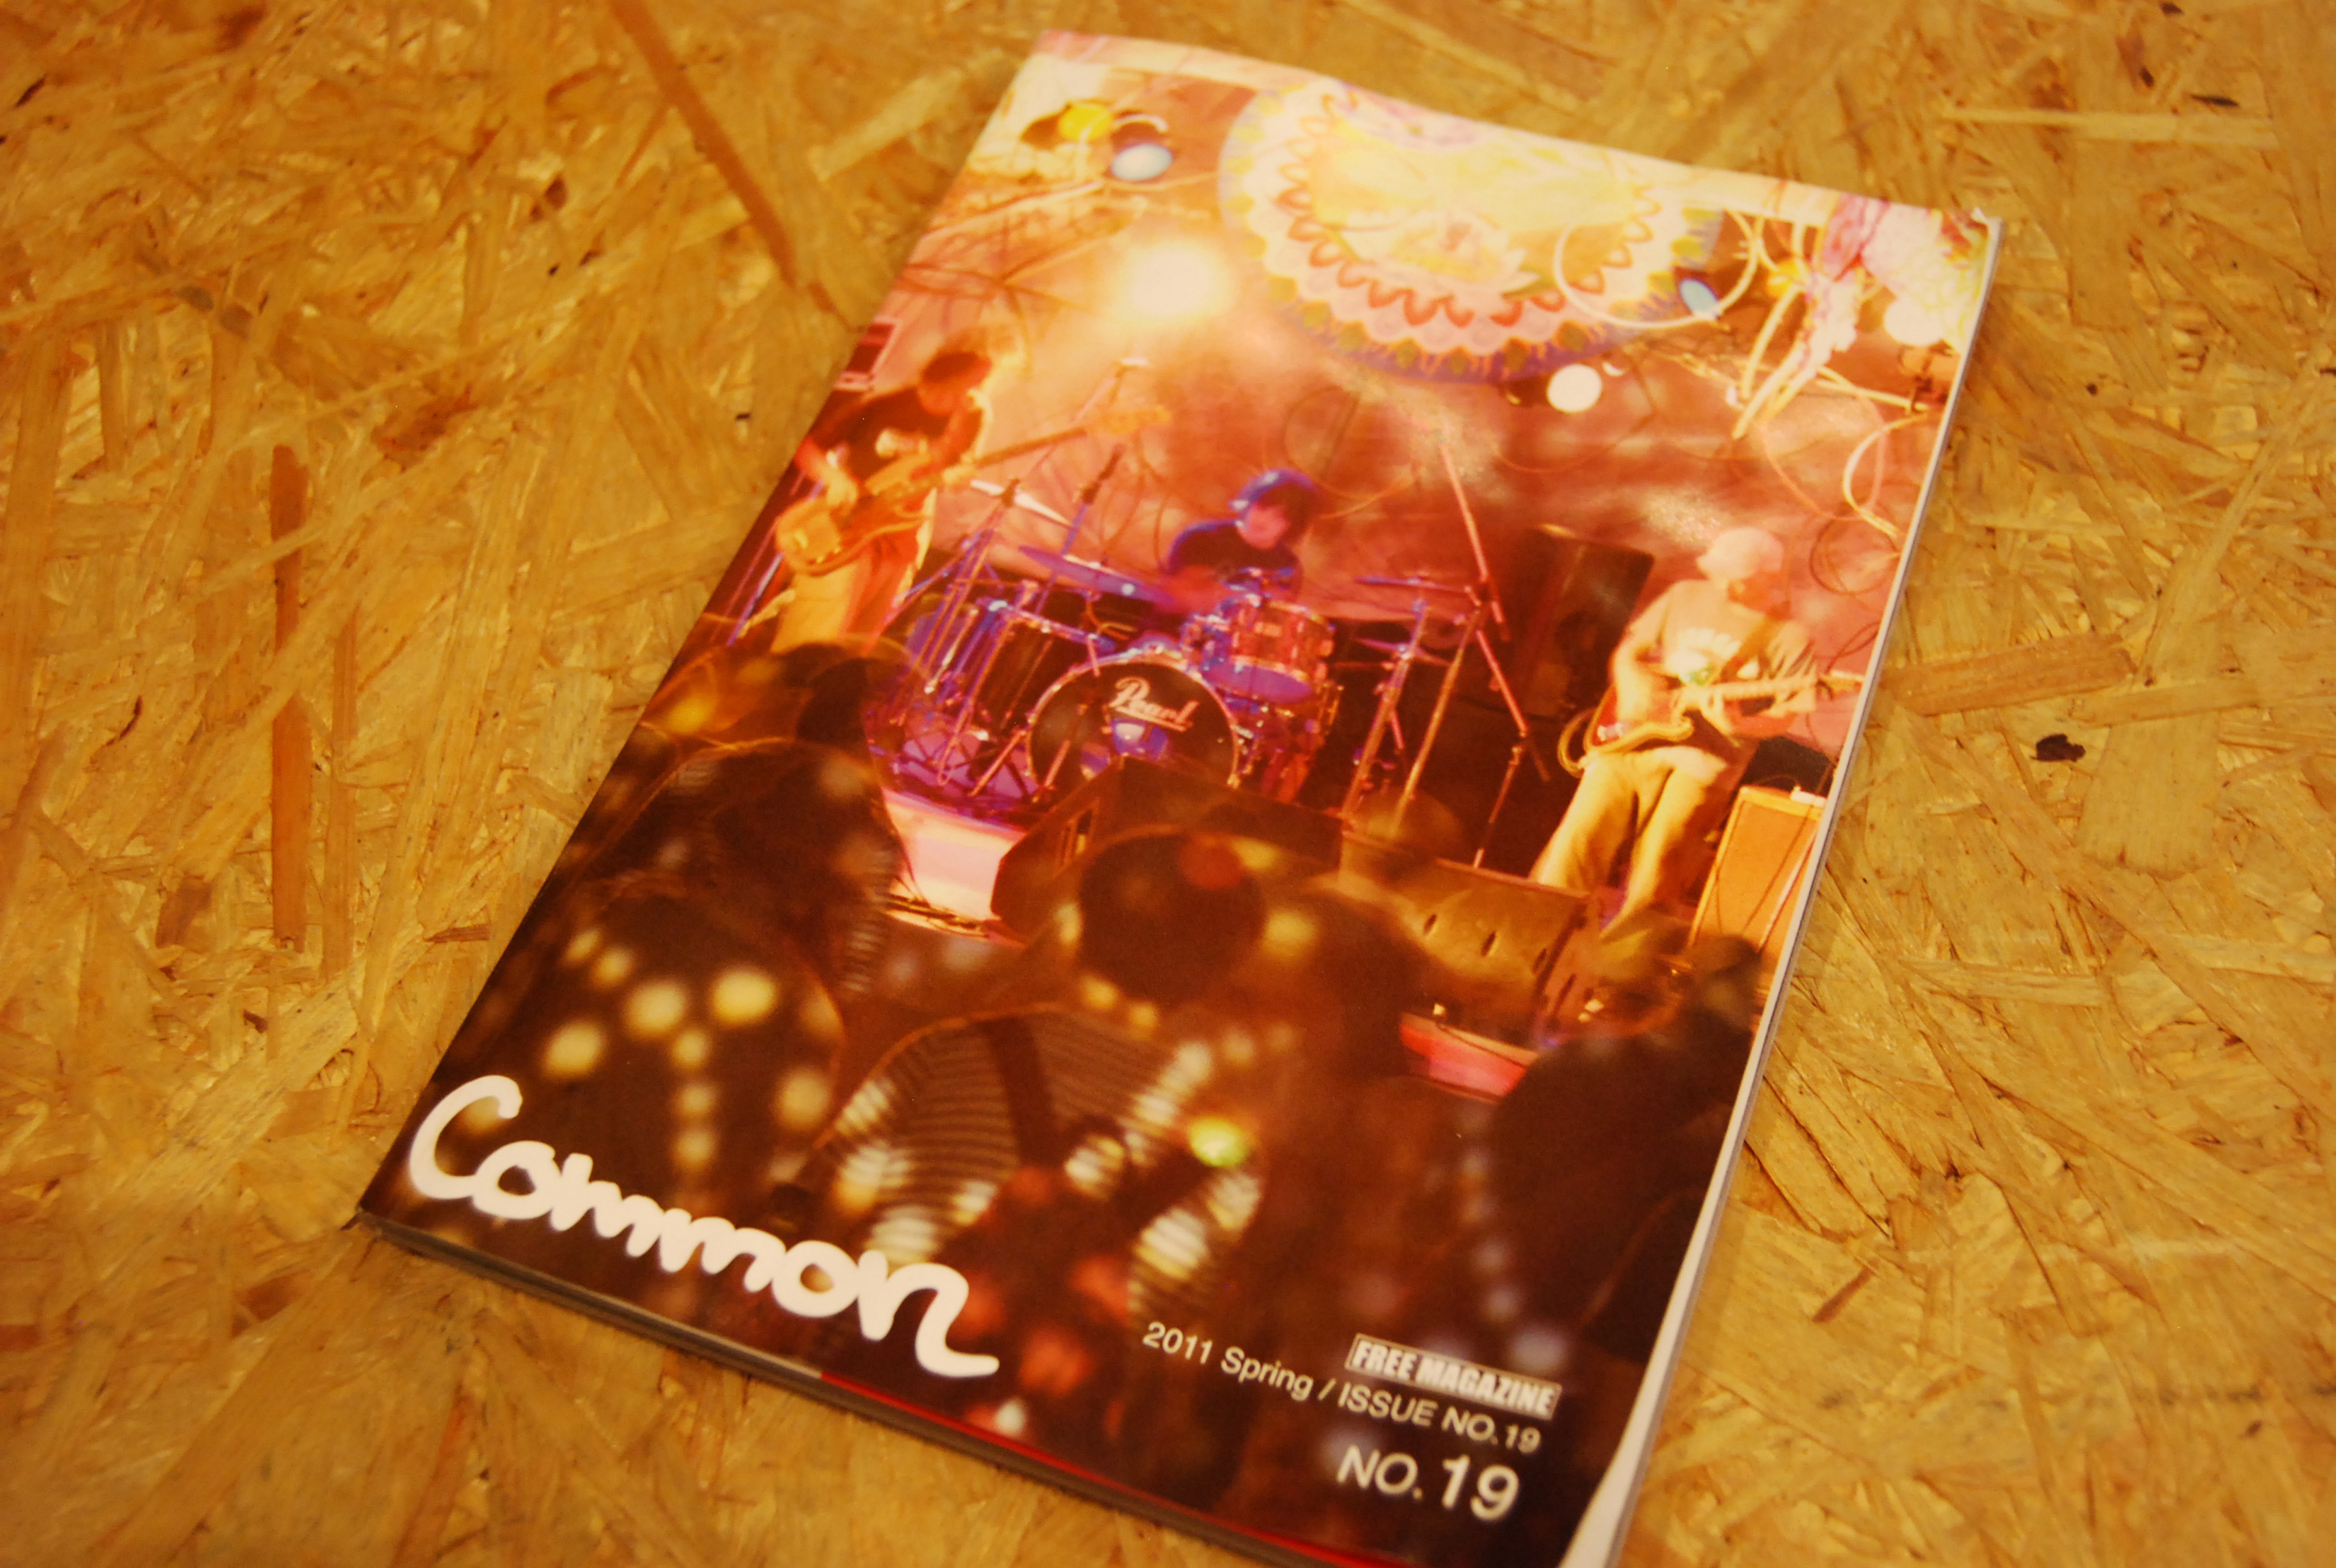 Common Magazine